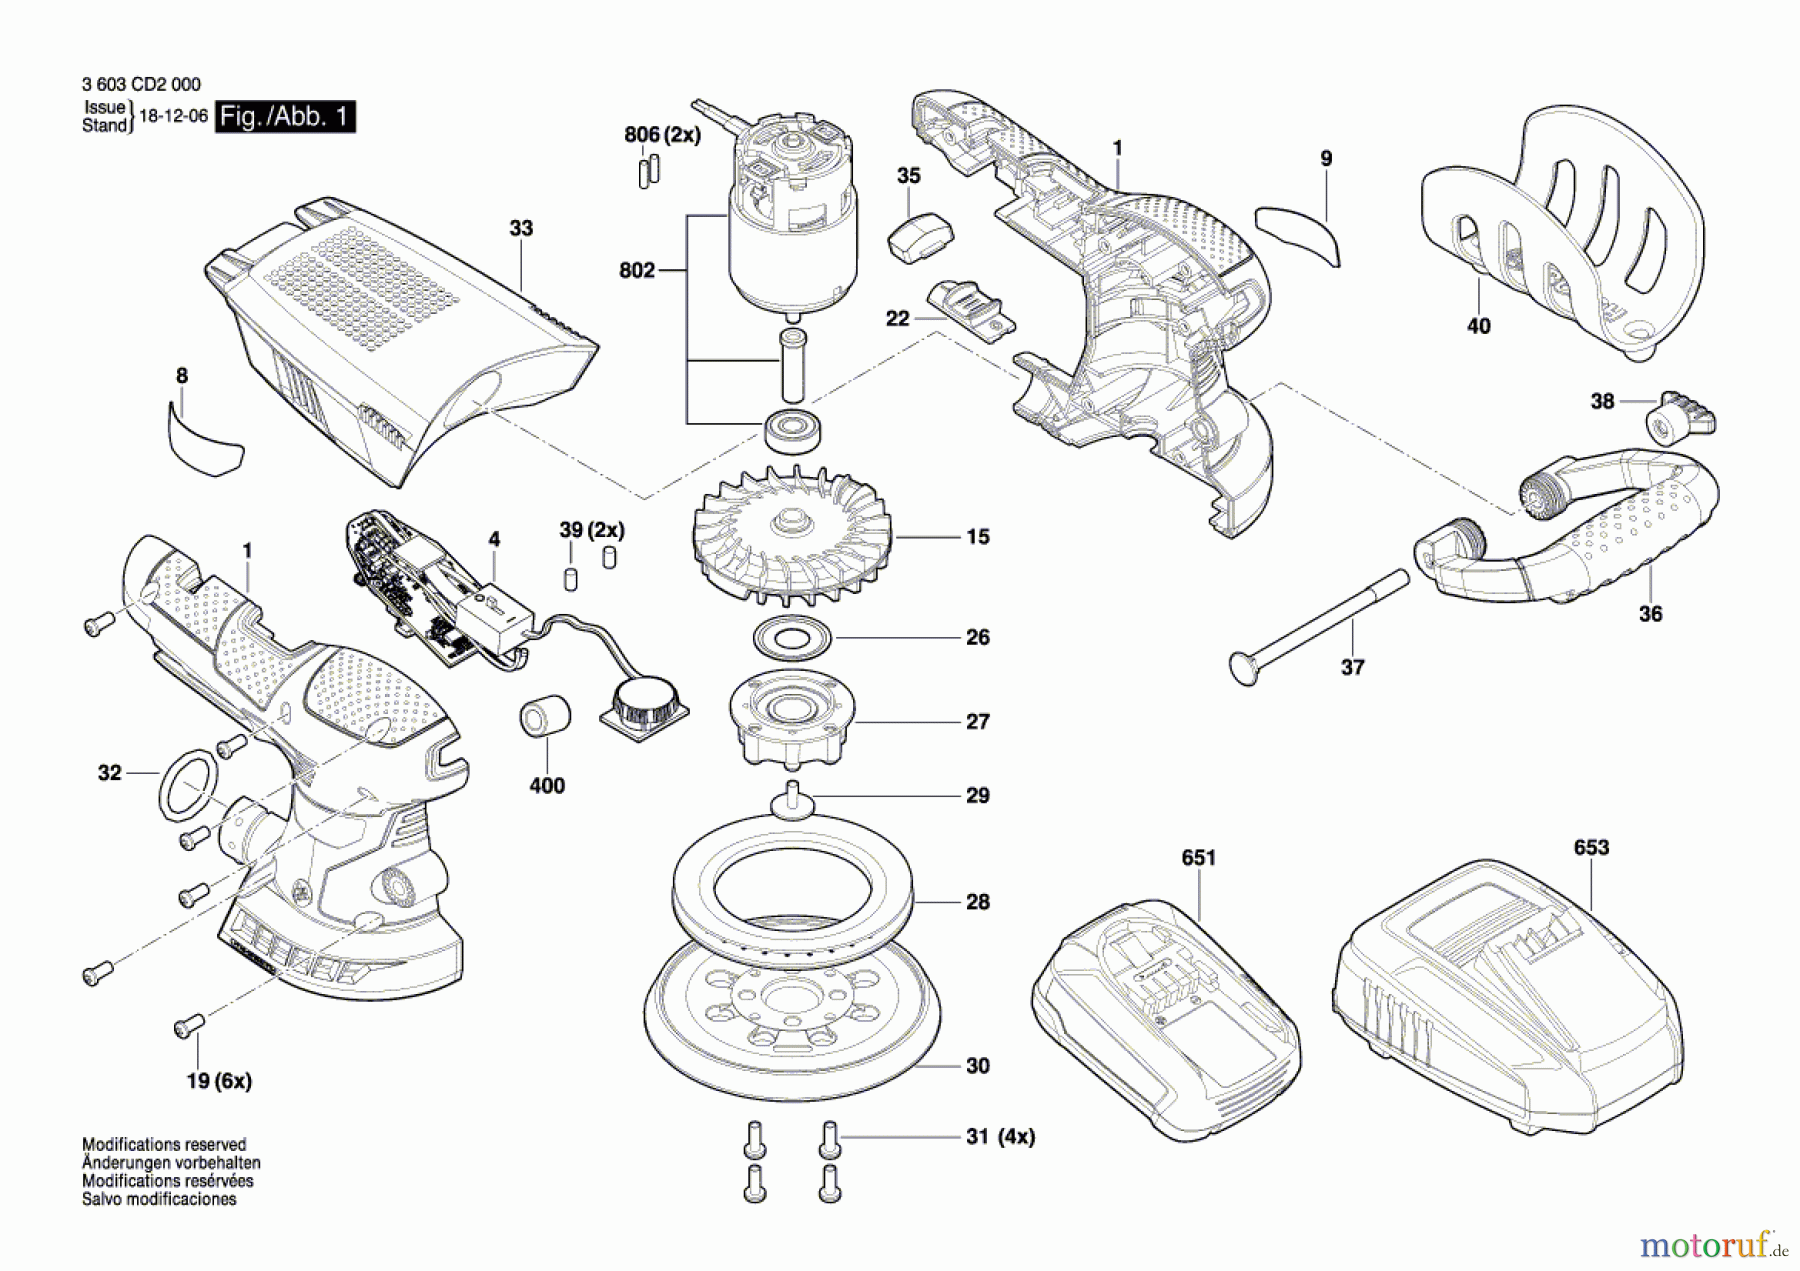  Bosch Werkzeug Exzenterschleifer AdvancedOrbit 18 Seite 1